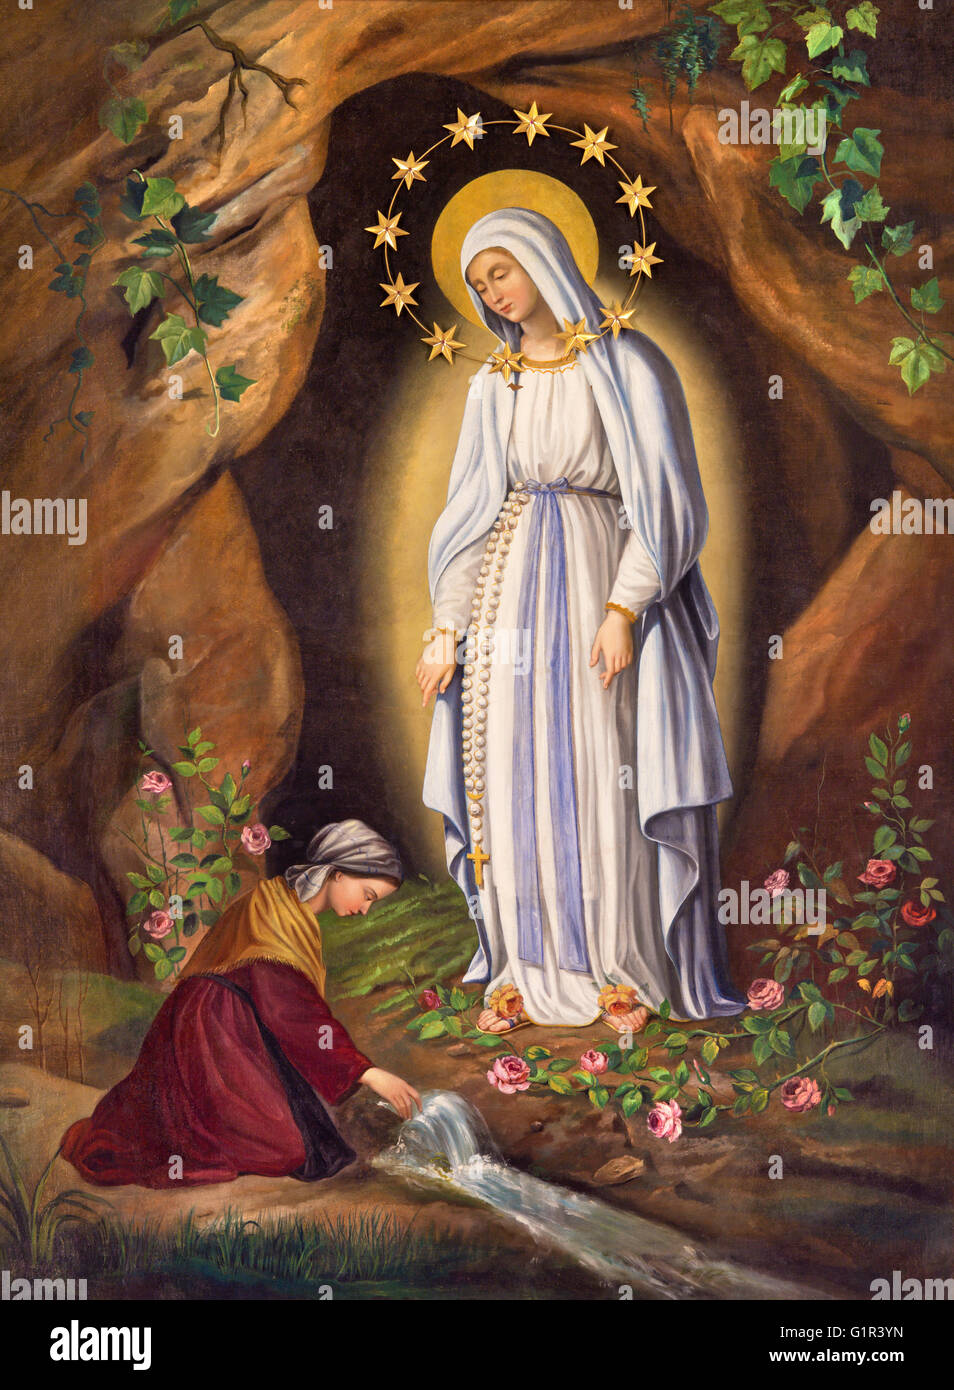 Roma, Italia - Marzo 9, 2016: La aparición de la Virgen a santa. Bernardita en Lourdes por artista desconocido (1873) Foto de stock